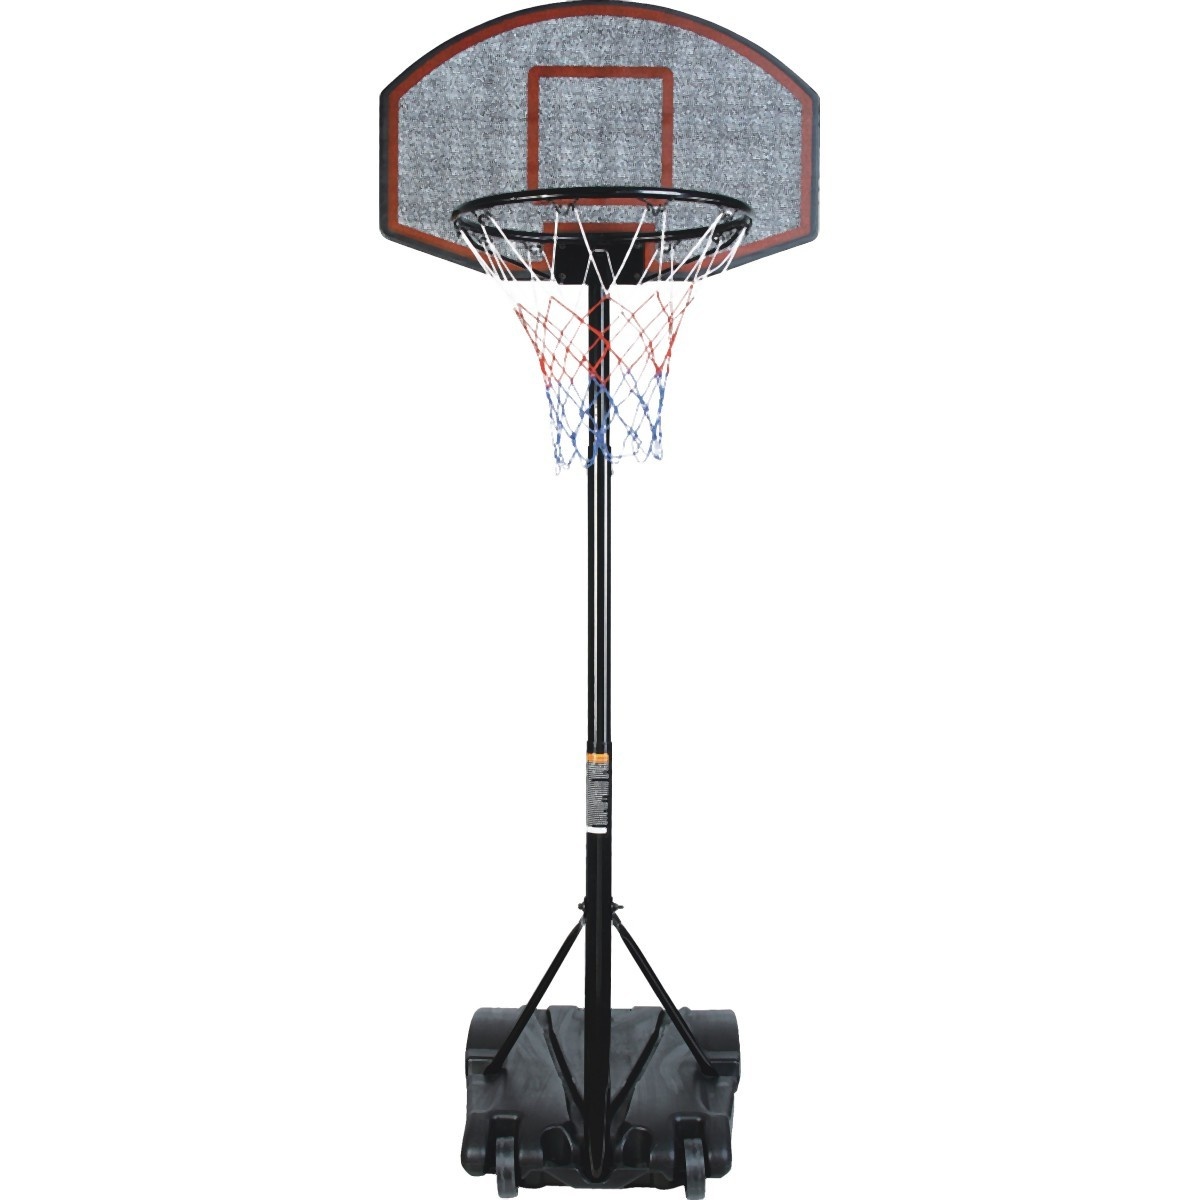 anders metriek Riskant Viking Choice Basketbalpaal staand 140-220 cm - Verstelbaar - Basketbalring  - VC-Lifestyle